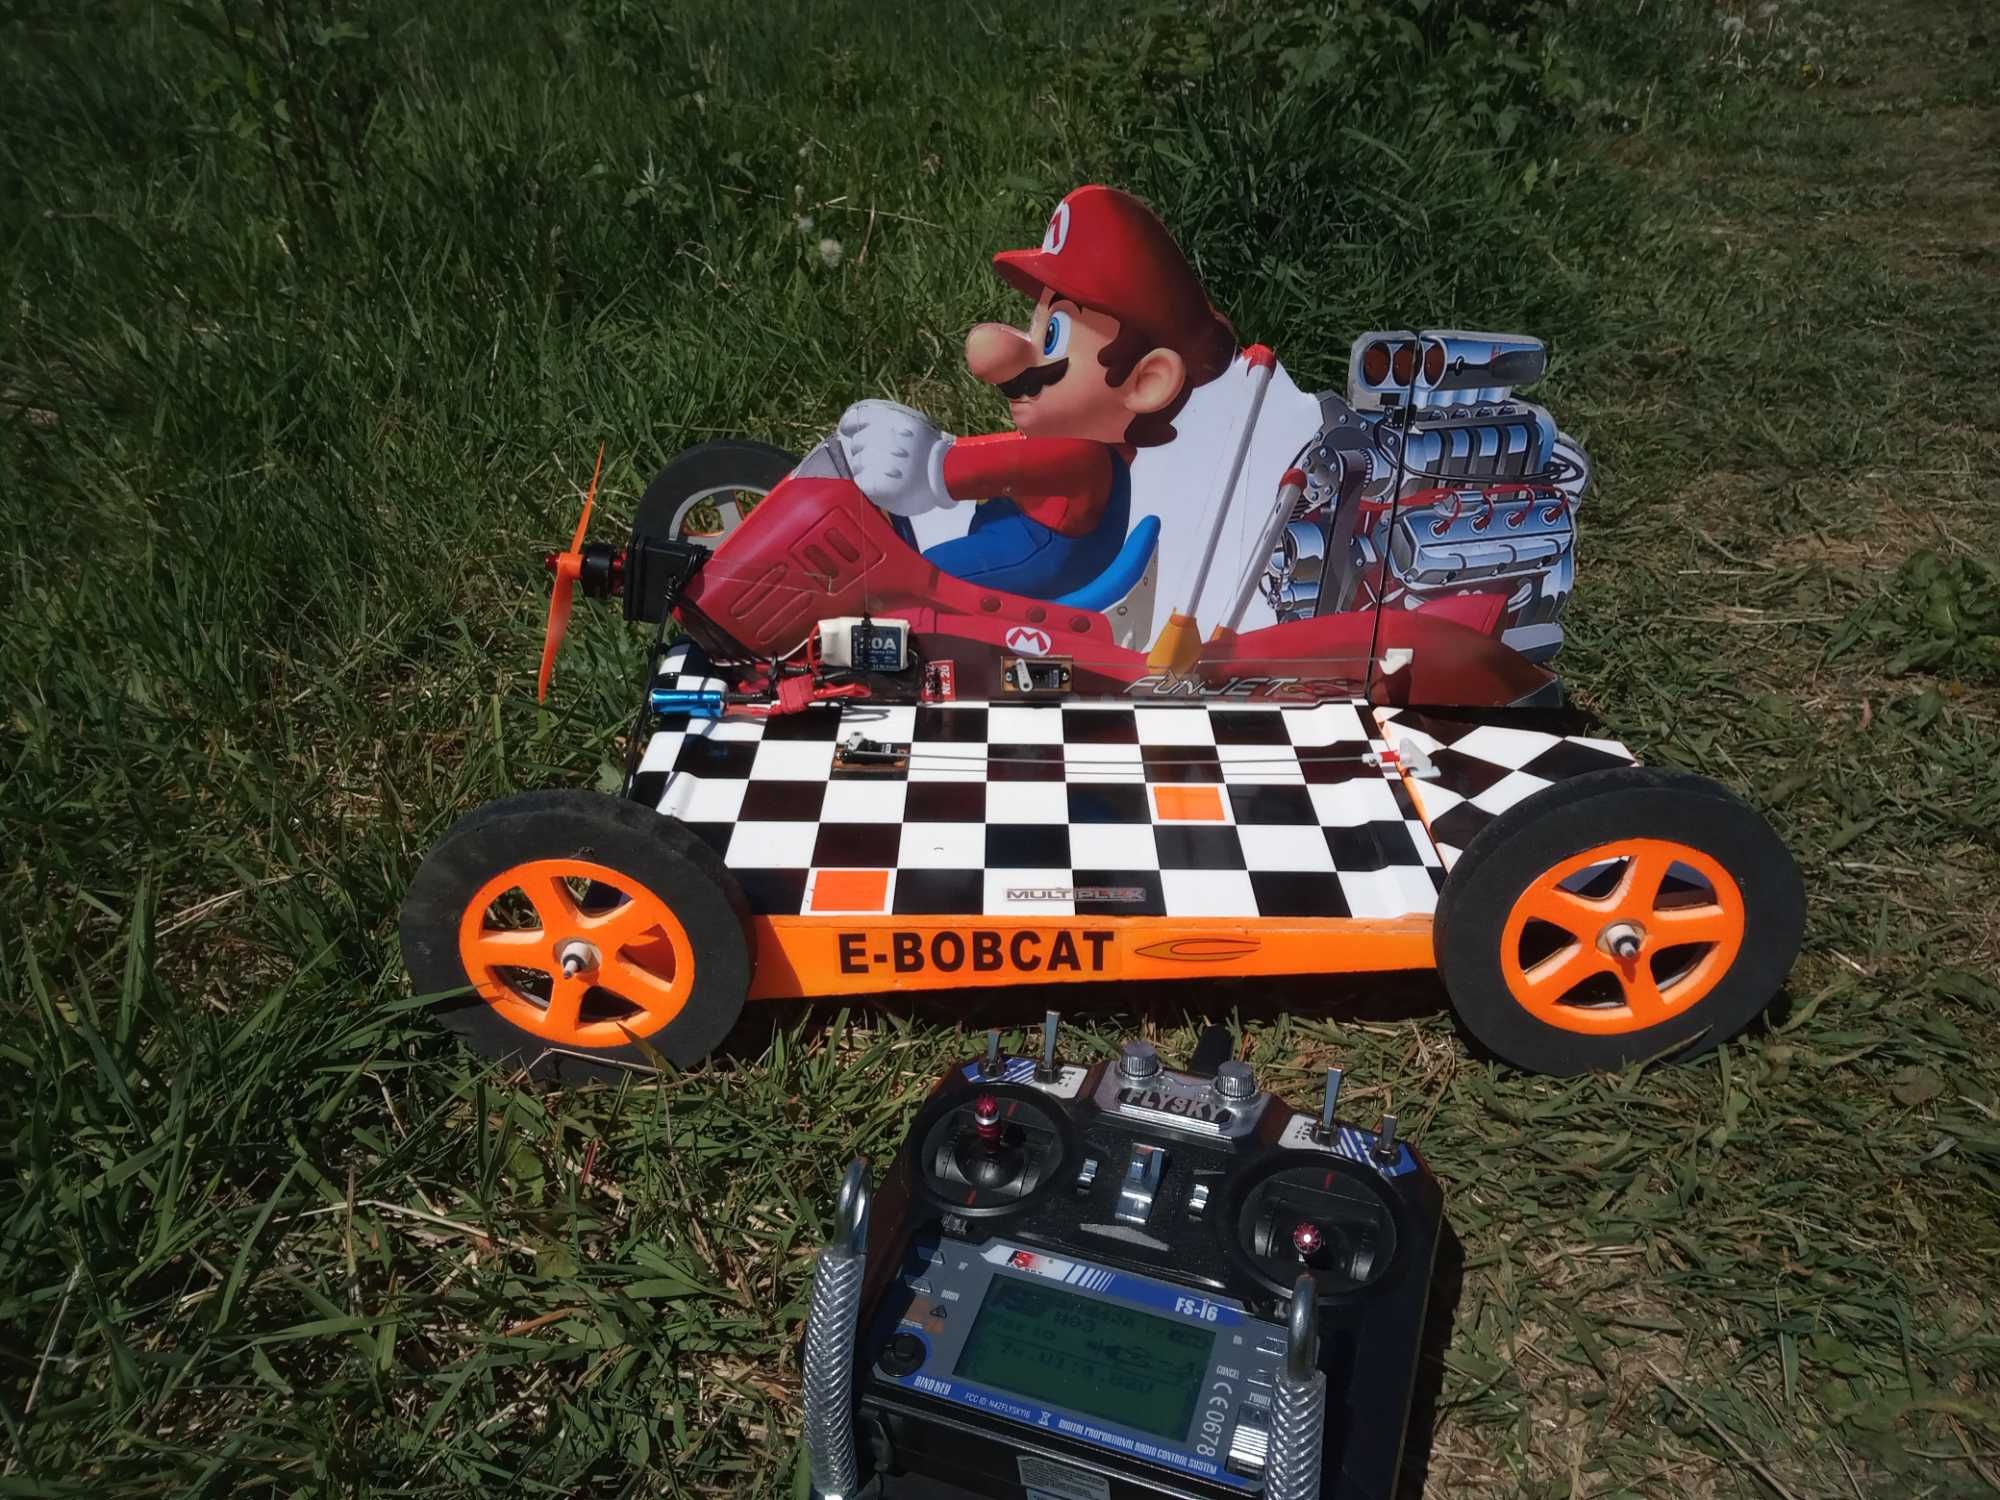 Samolot RC "Mario car" latający samochód.